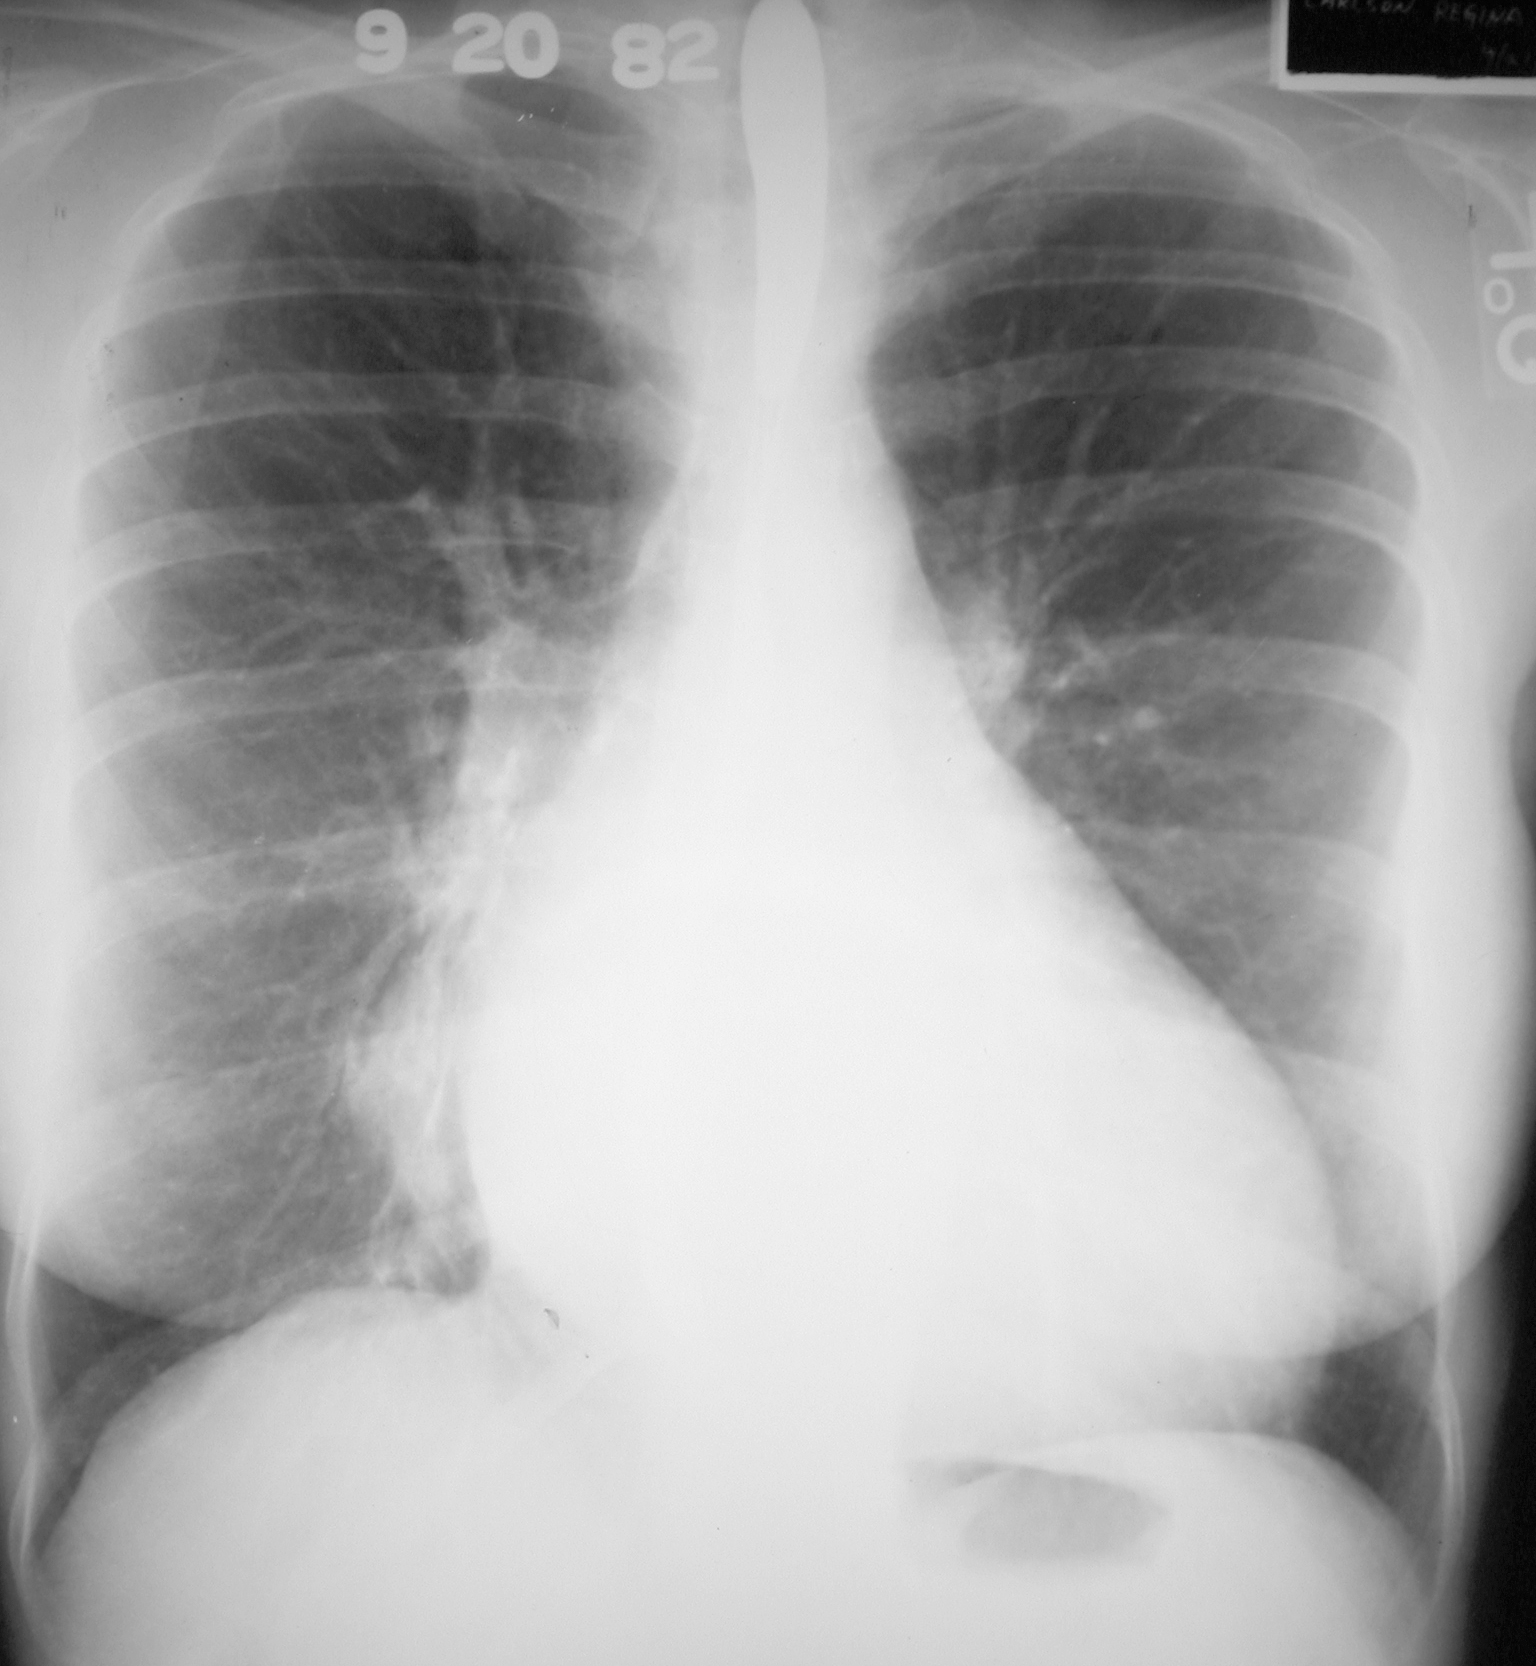 pulmonary hypertension xray